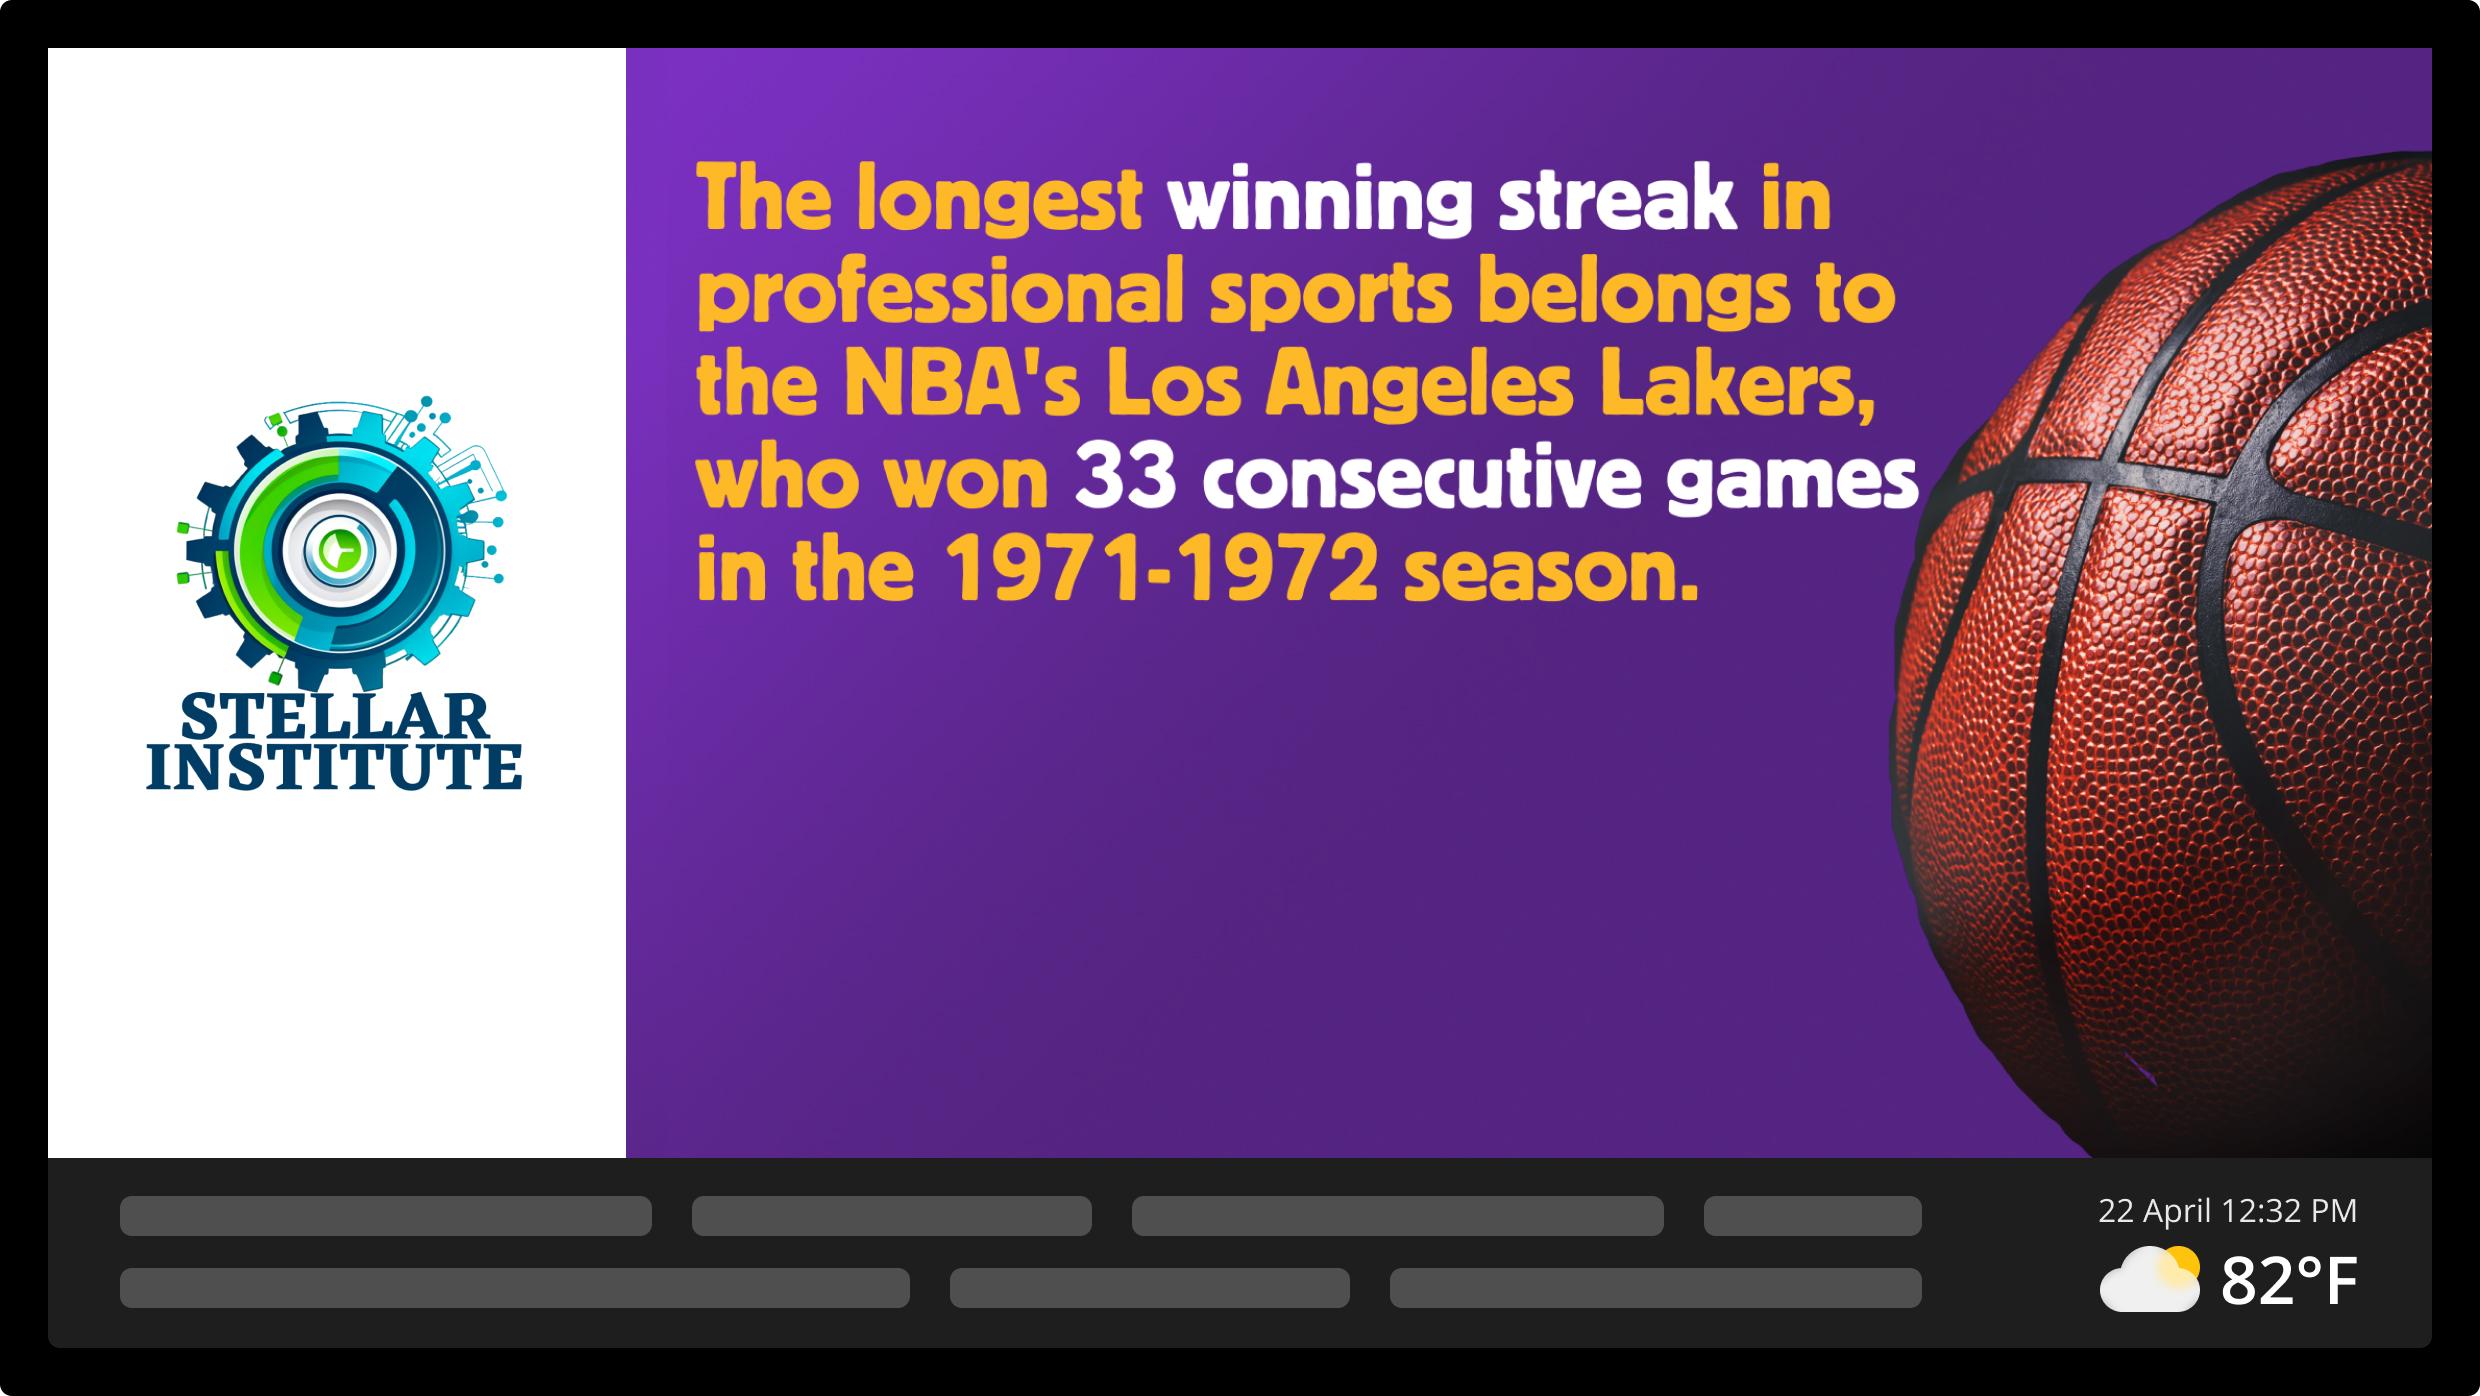 Screen example: The longest winning streak in professional sports